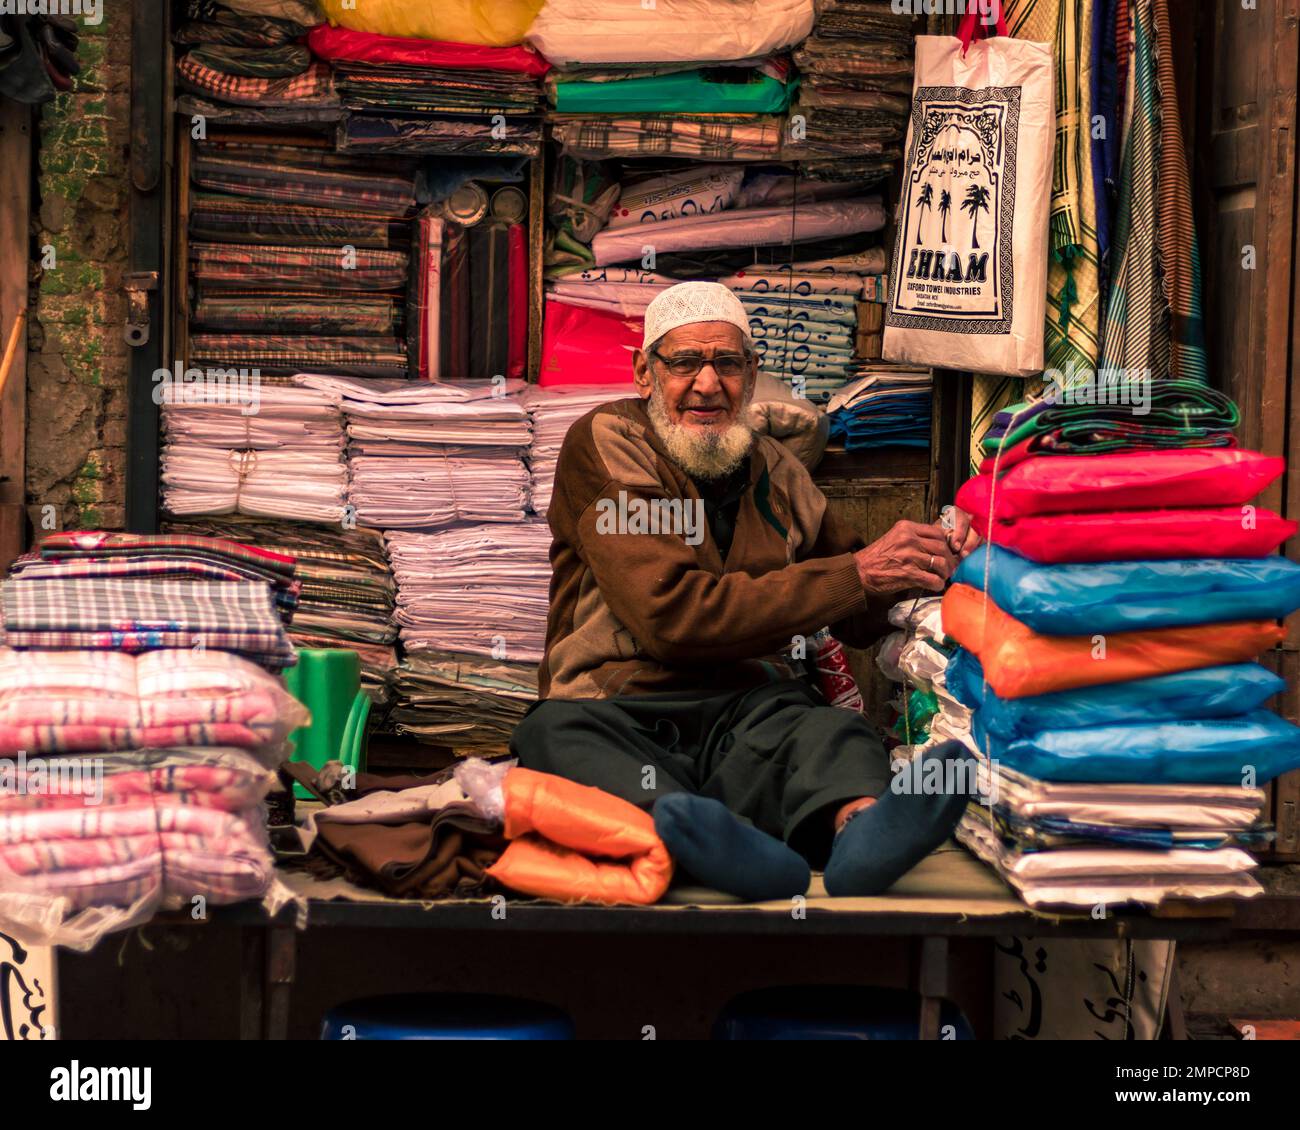 Lahore Pakistan 2020, un vieil homme qui vend des chiffons dans sa petite boutique de tissus dans la ville fortifiée de Lahore, un vieil homme souriant et regardant dans la caméra Banque D'Images